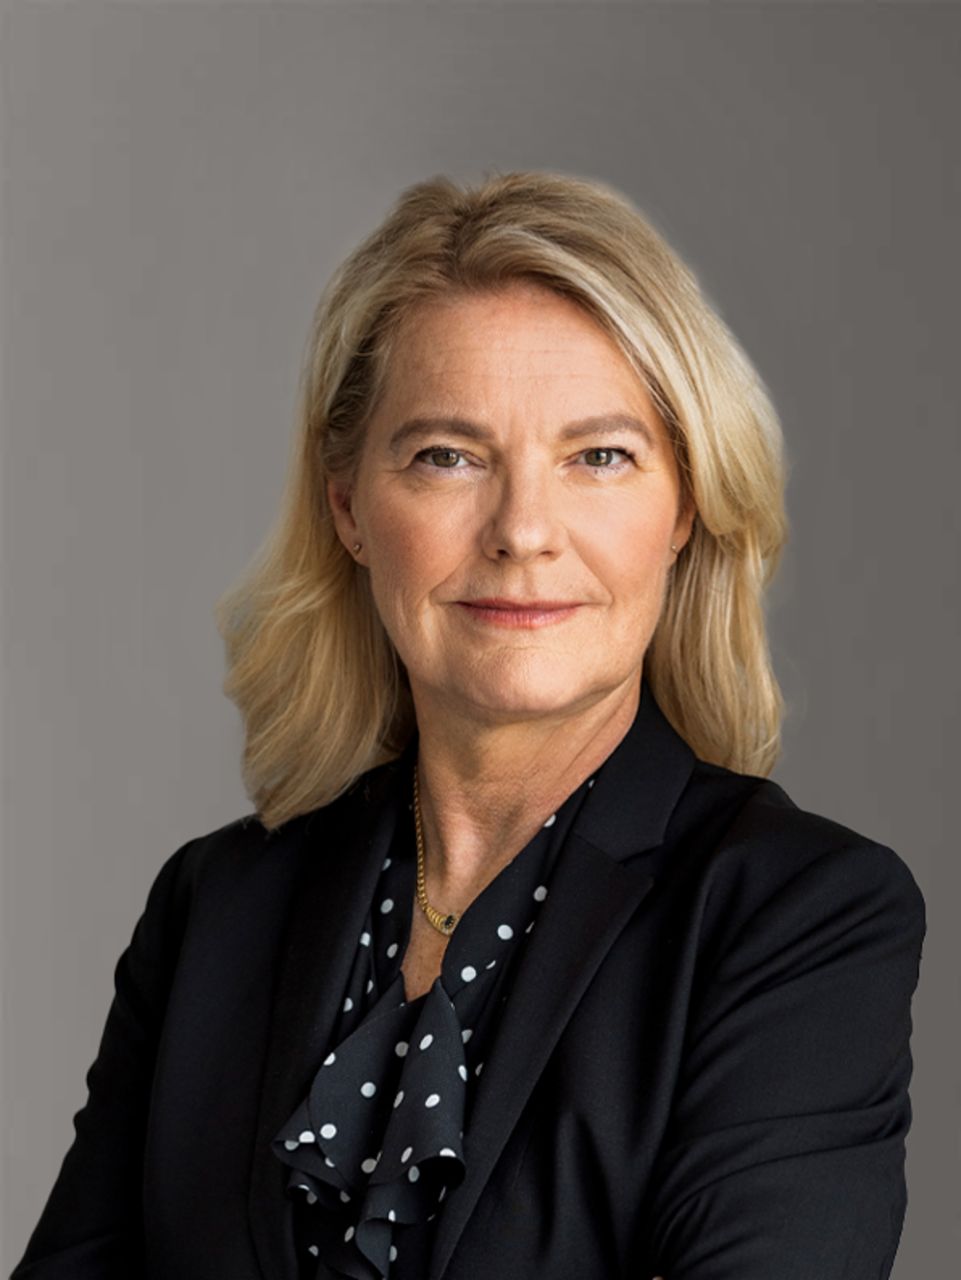 Portraitfoto von Catharina Modahl Nilsson, Mitglied des Vorstands der TRATON SE, verantwortlich für Produktmanagement in der TRATON GROUP, in Farbe